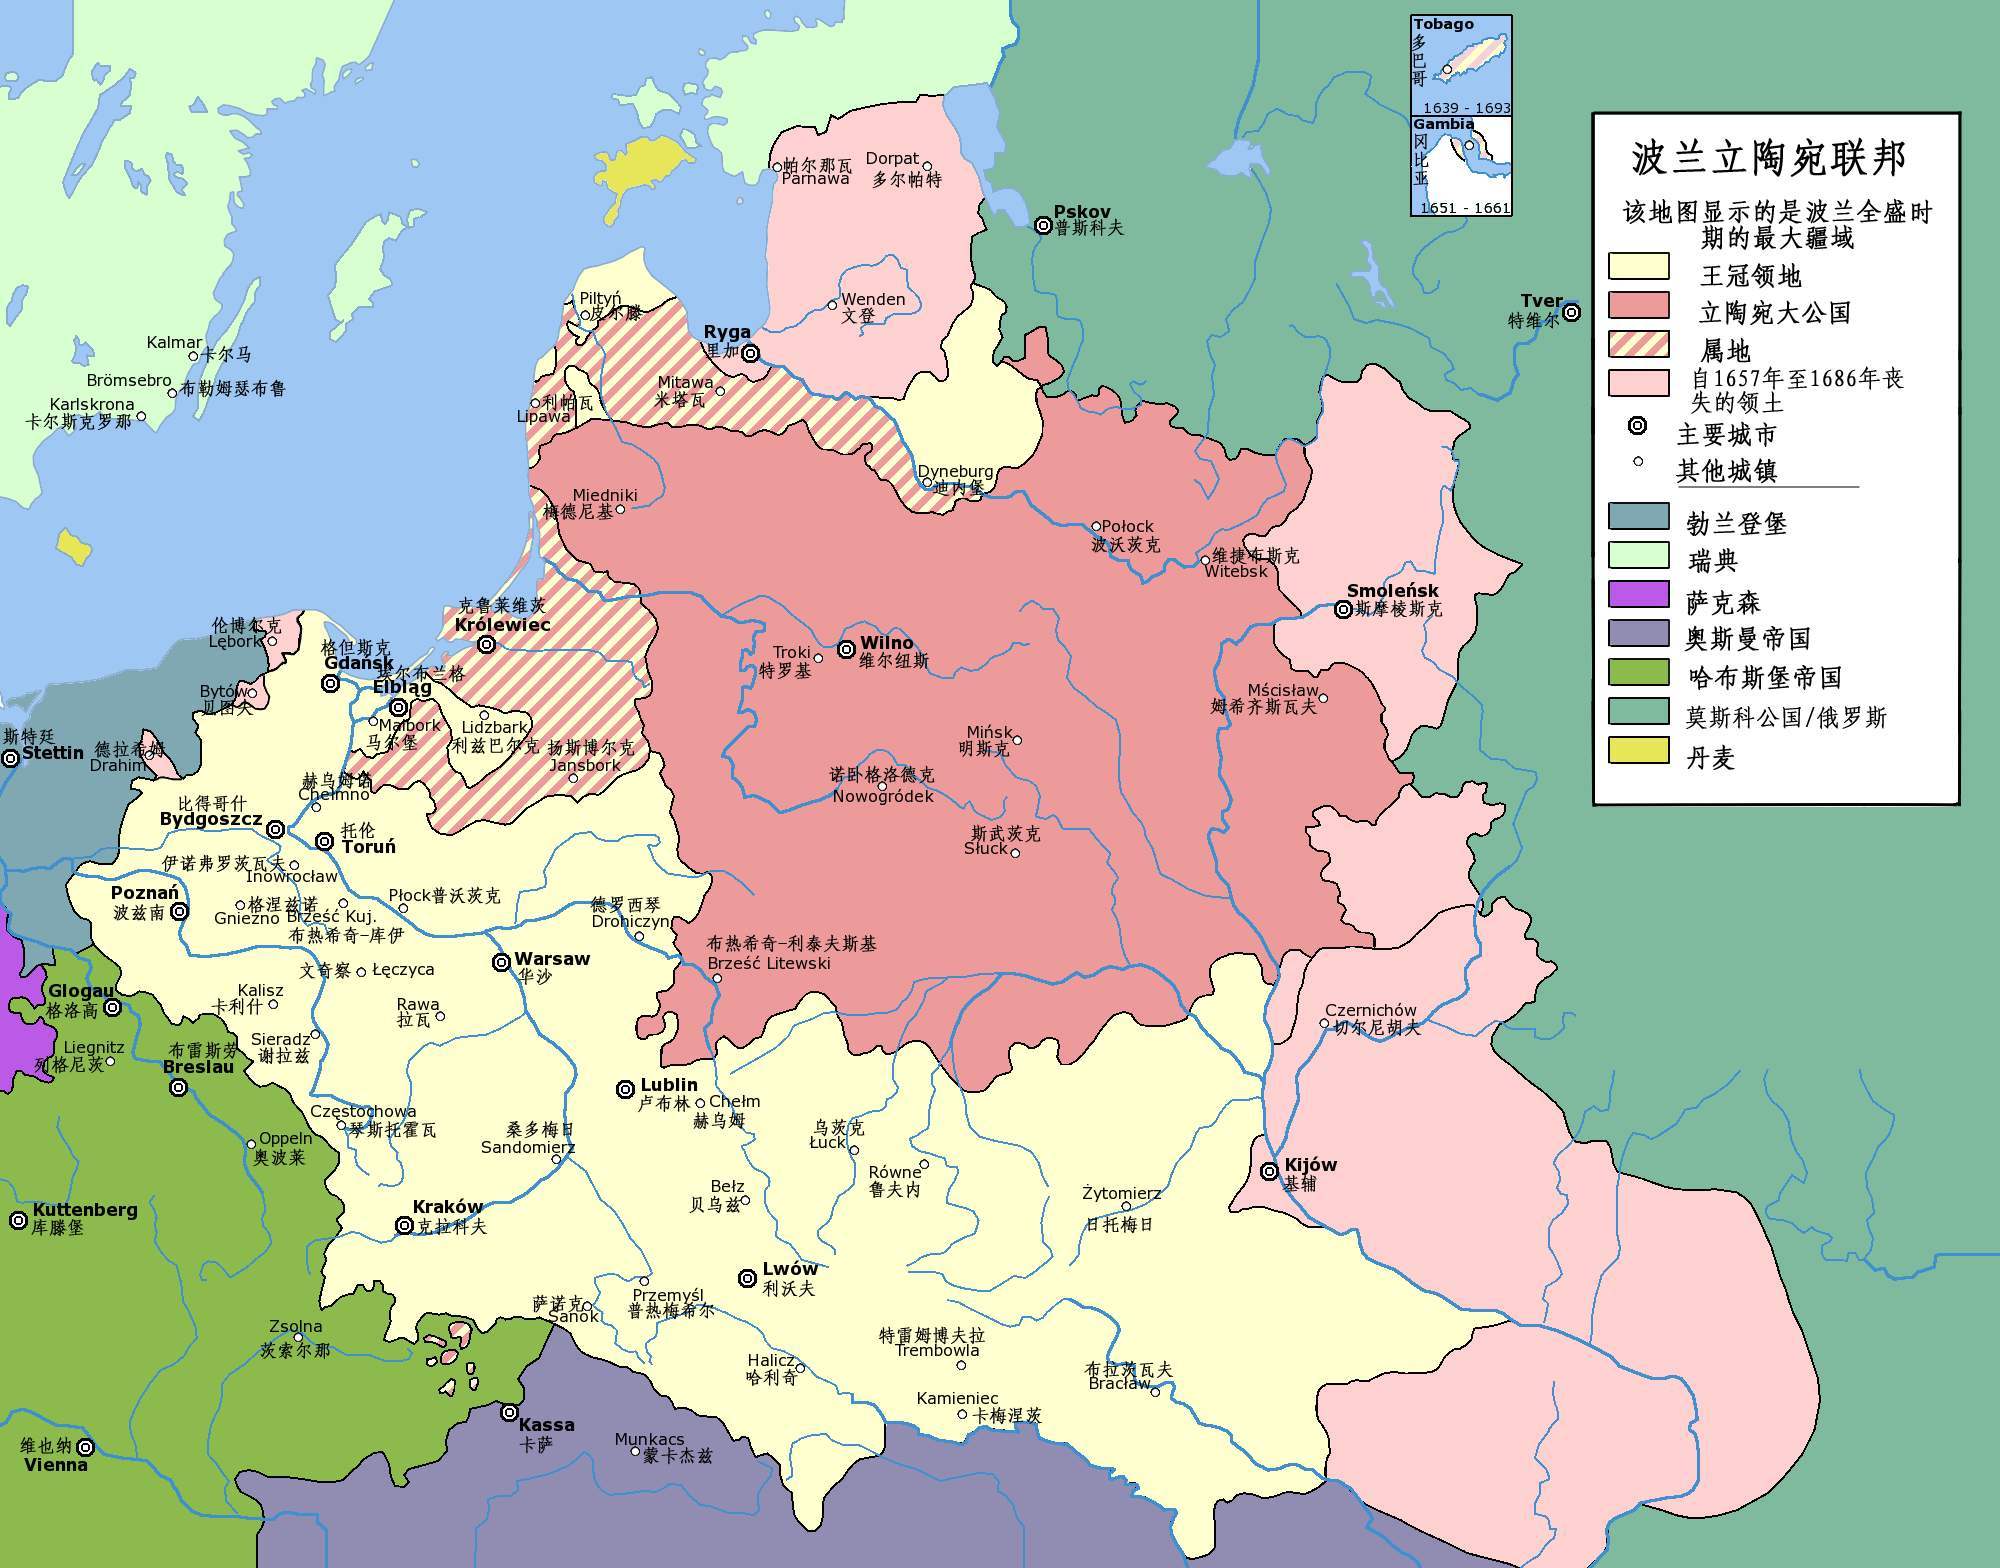 波兰在历史上被俄普奥三次瓜分进而灭国了,一直到一战后才在西方列强